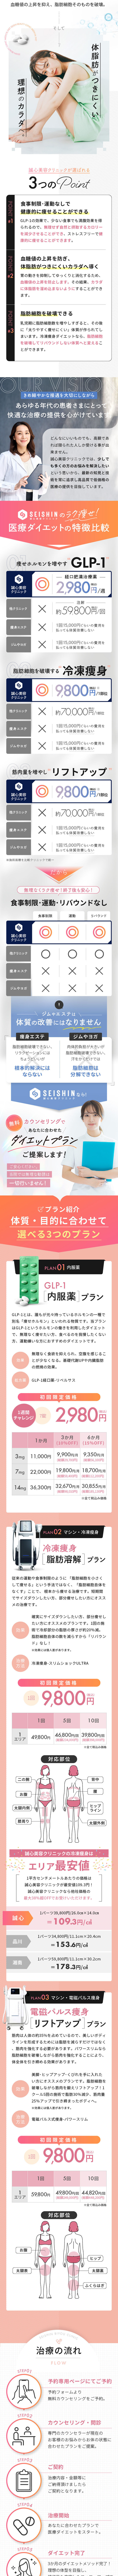 GLP-1 メディカルダイエット+冷凍痩身メソッド_sp_2